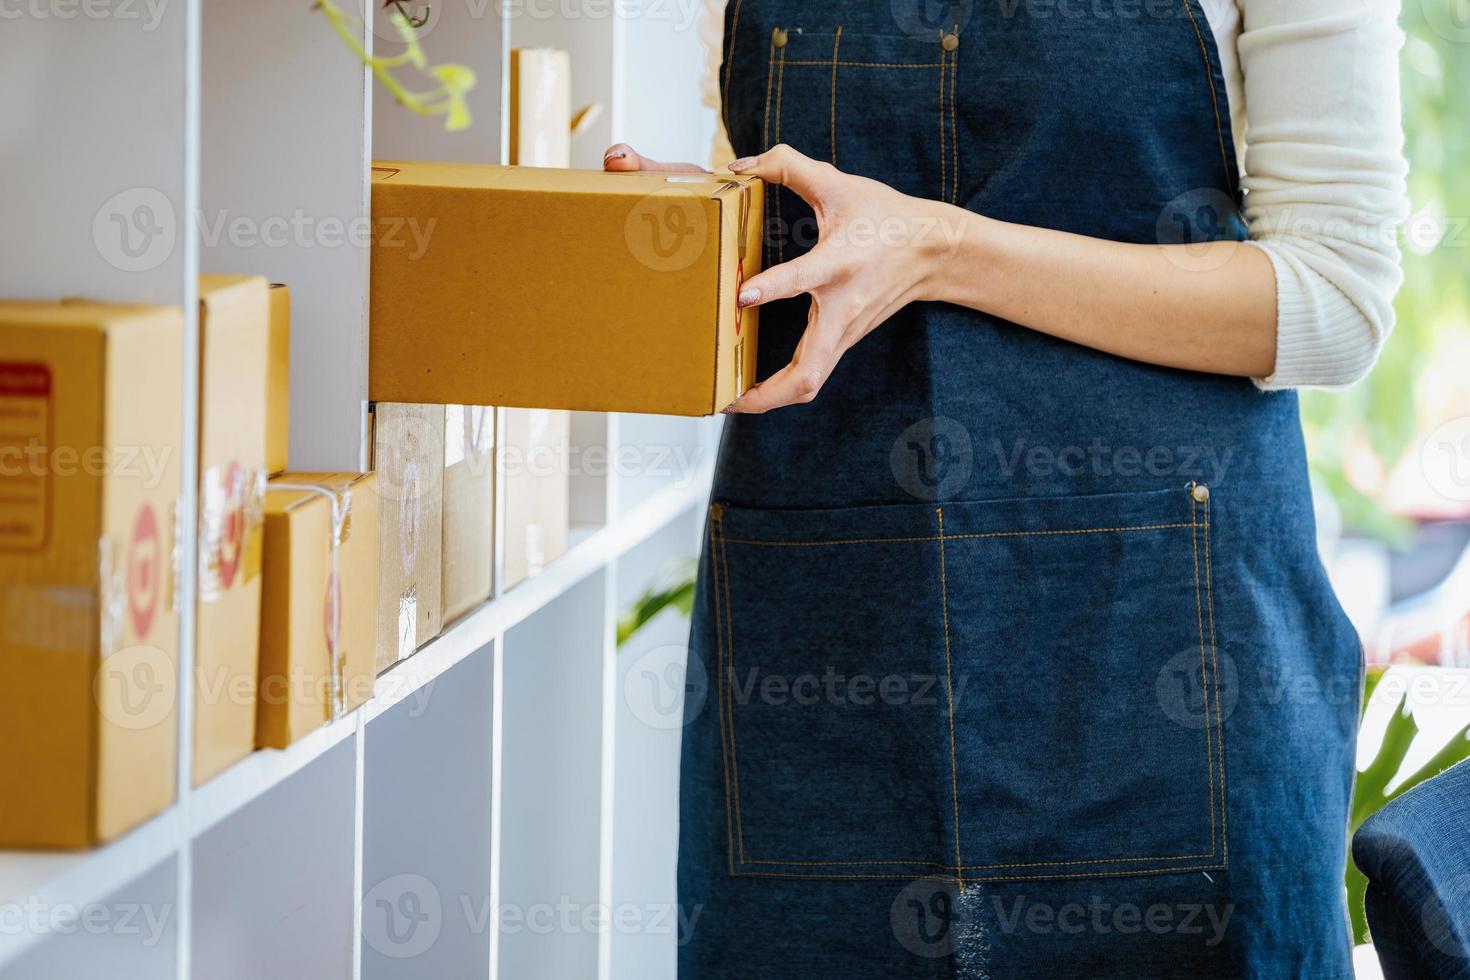 werk van huis. gelukkig Dames verkoop producten online opstarten klein bedrijf eigenaren zijn plukken omhoog pakket dozen naar pak klant bestellingen en bereiden hen voor port. foto